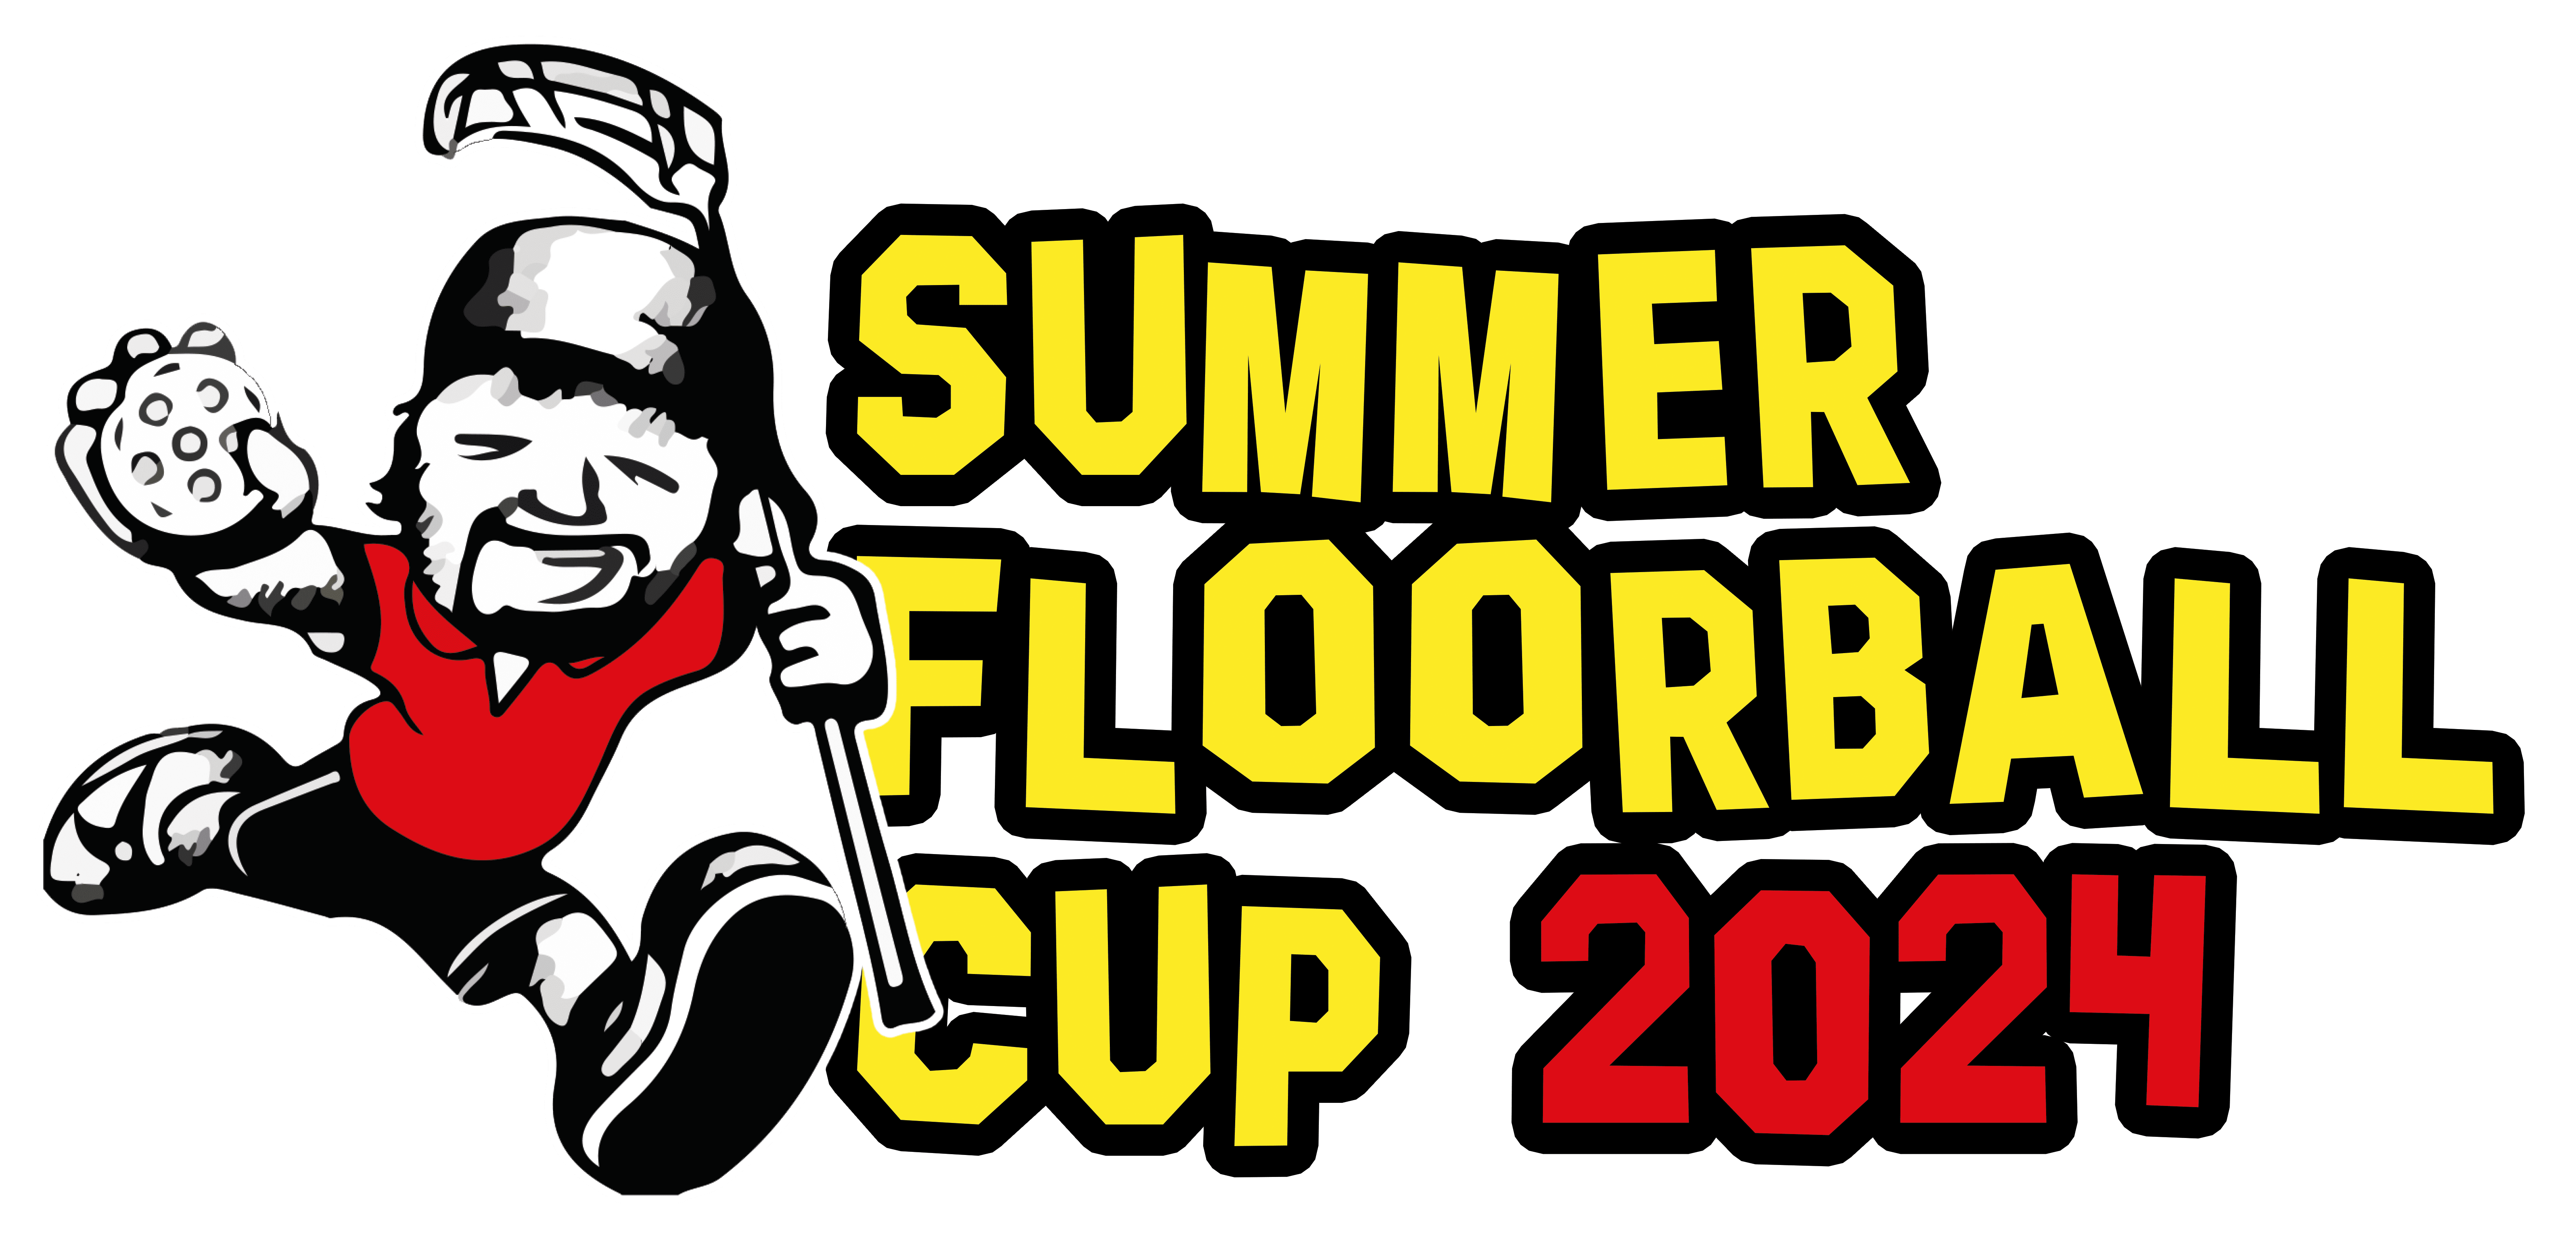 Summer Floorball Cup